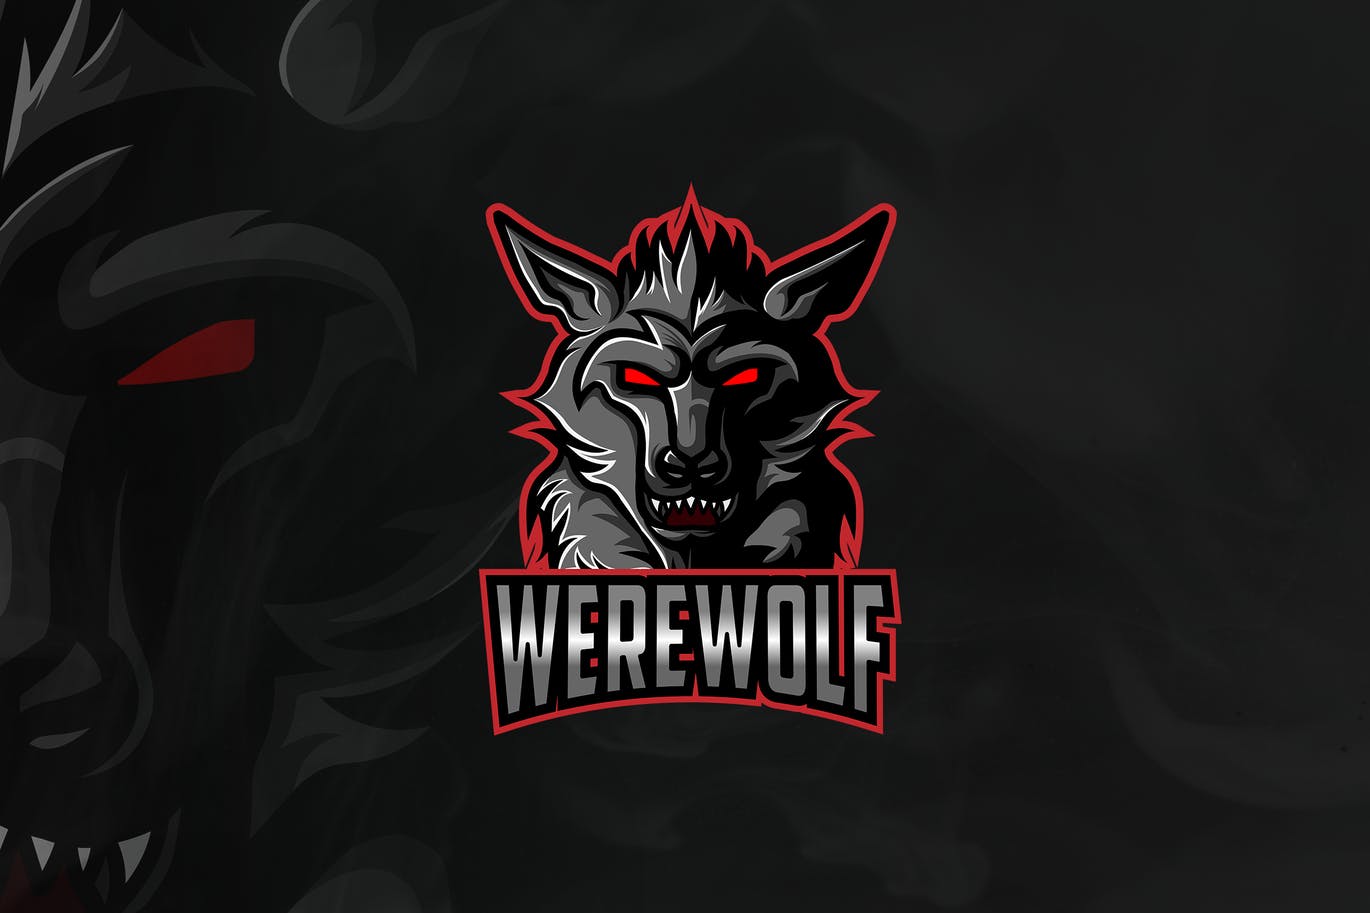 Werewolf - Mascot & Esport Logo